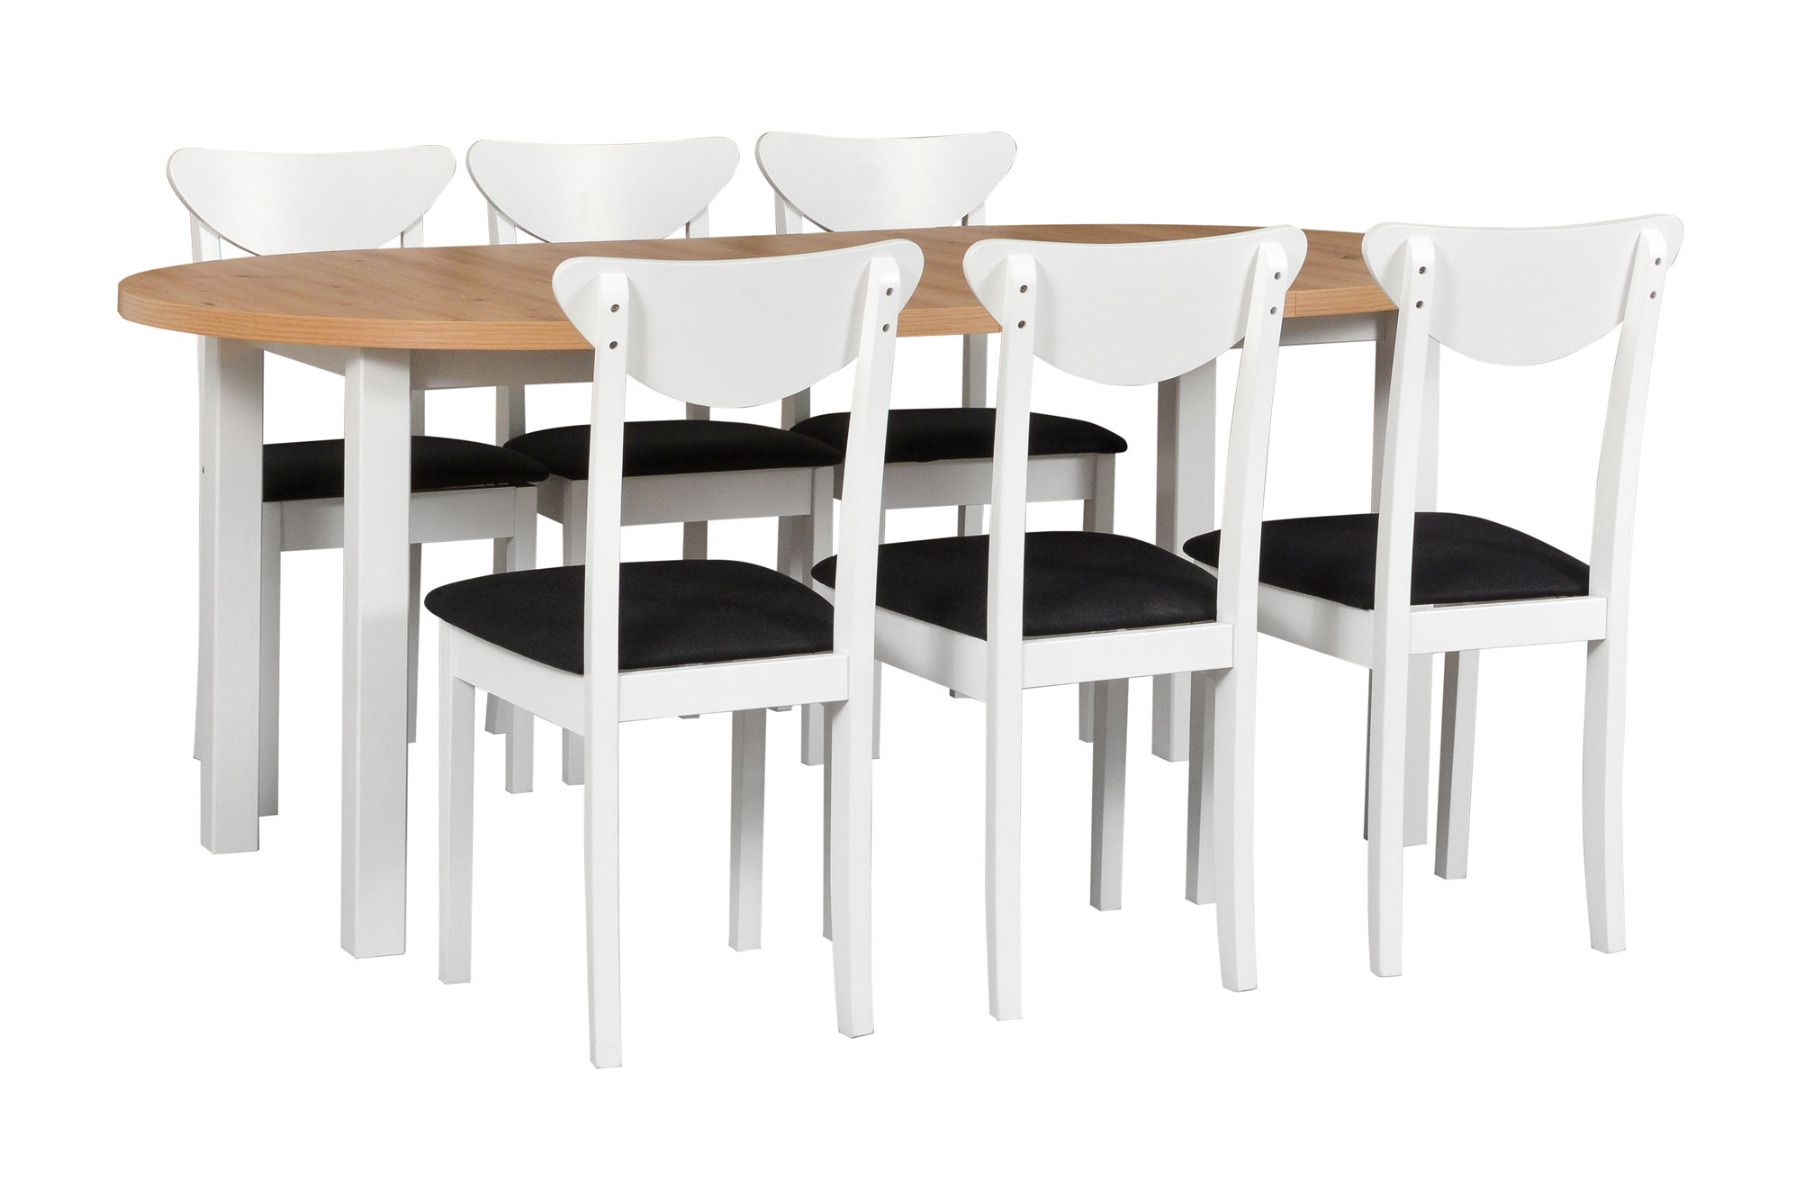 Esszimmer Komplett - Set O, 7 - teilig, ausziehbarer Holztisch in Weiß/Eiche, 6 weiße Holzstühle mit bequemer Polsterung in Schwarz, robustes Holz